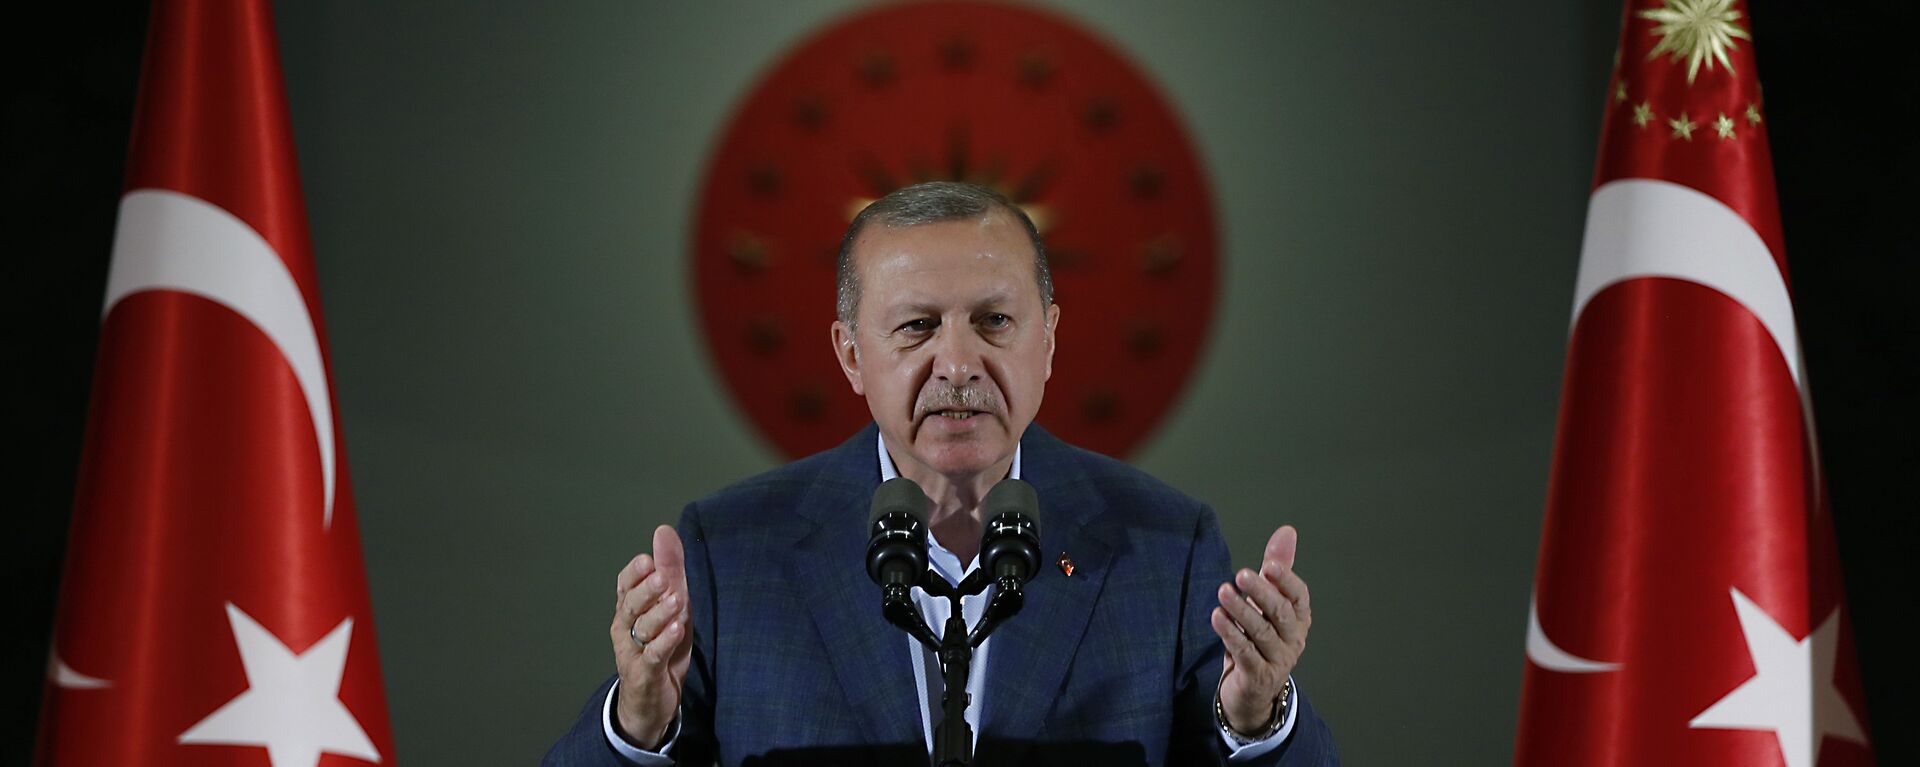 Recep Tayyip Erdogan, presidente de Turquía - Sputnik Mundo, 1920, 13.01.2021